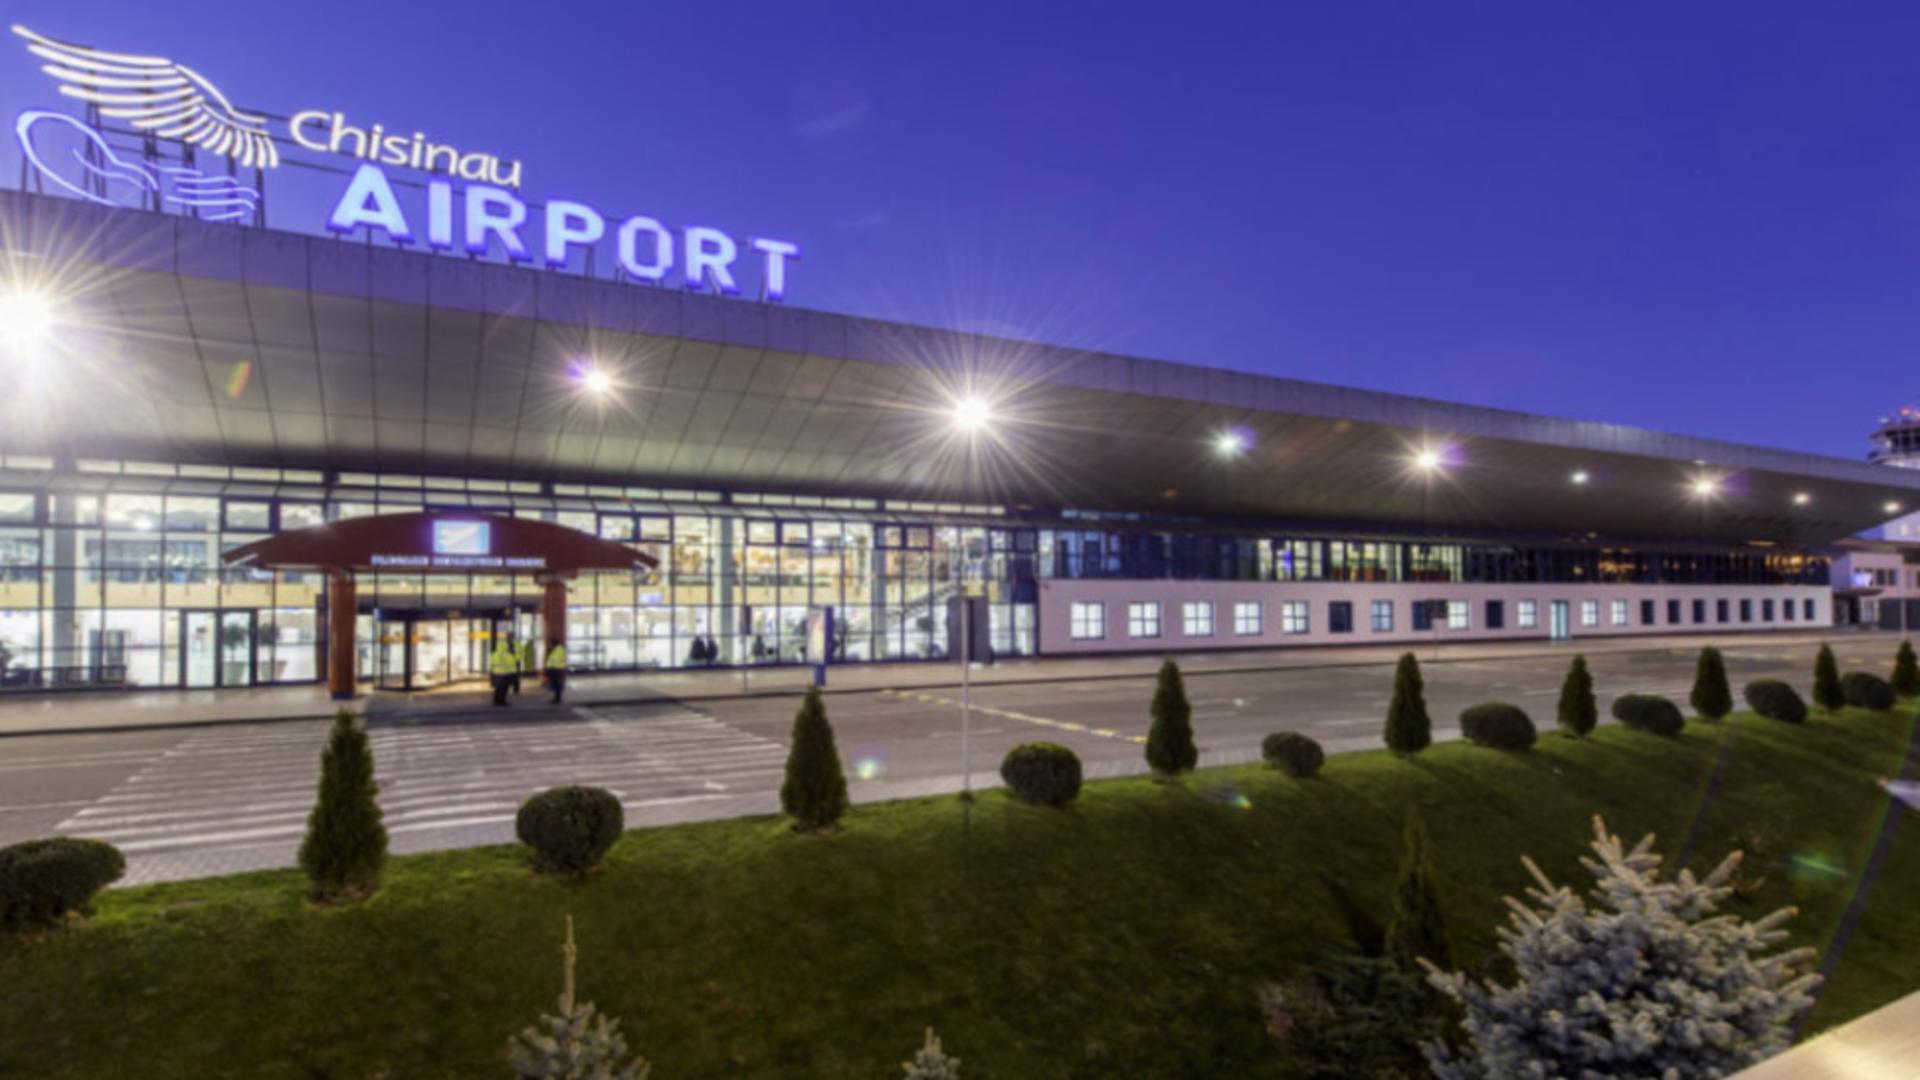 Rep. Moldova trece de la ortografia rusă la cea română în codul de abreviere al aeroportului Chișinăului